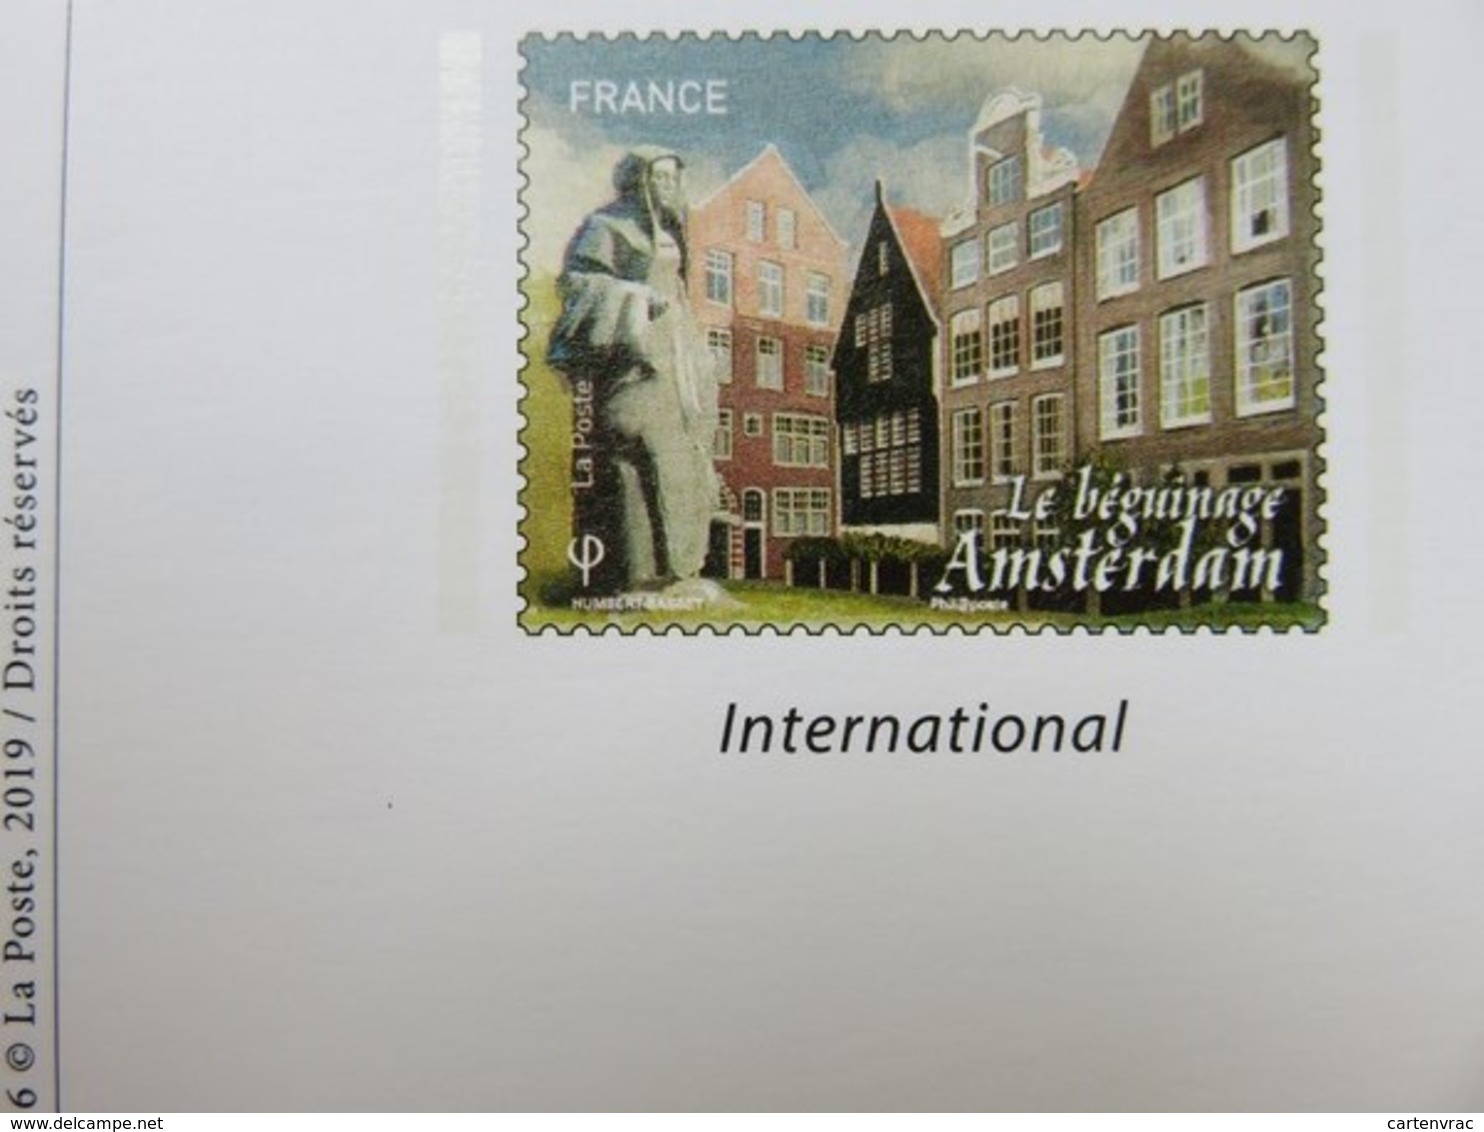 PAP - Carte Postale Pré-timbrée - Timbre International Le Béguinage - Amsterdam Capitale Européenne - Série Capitales - Documents Of Postal Services